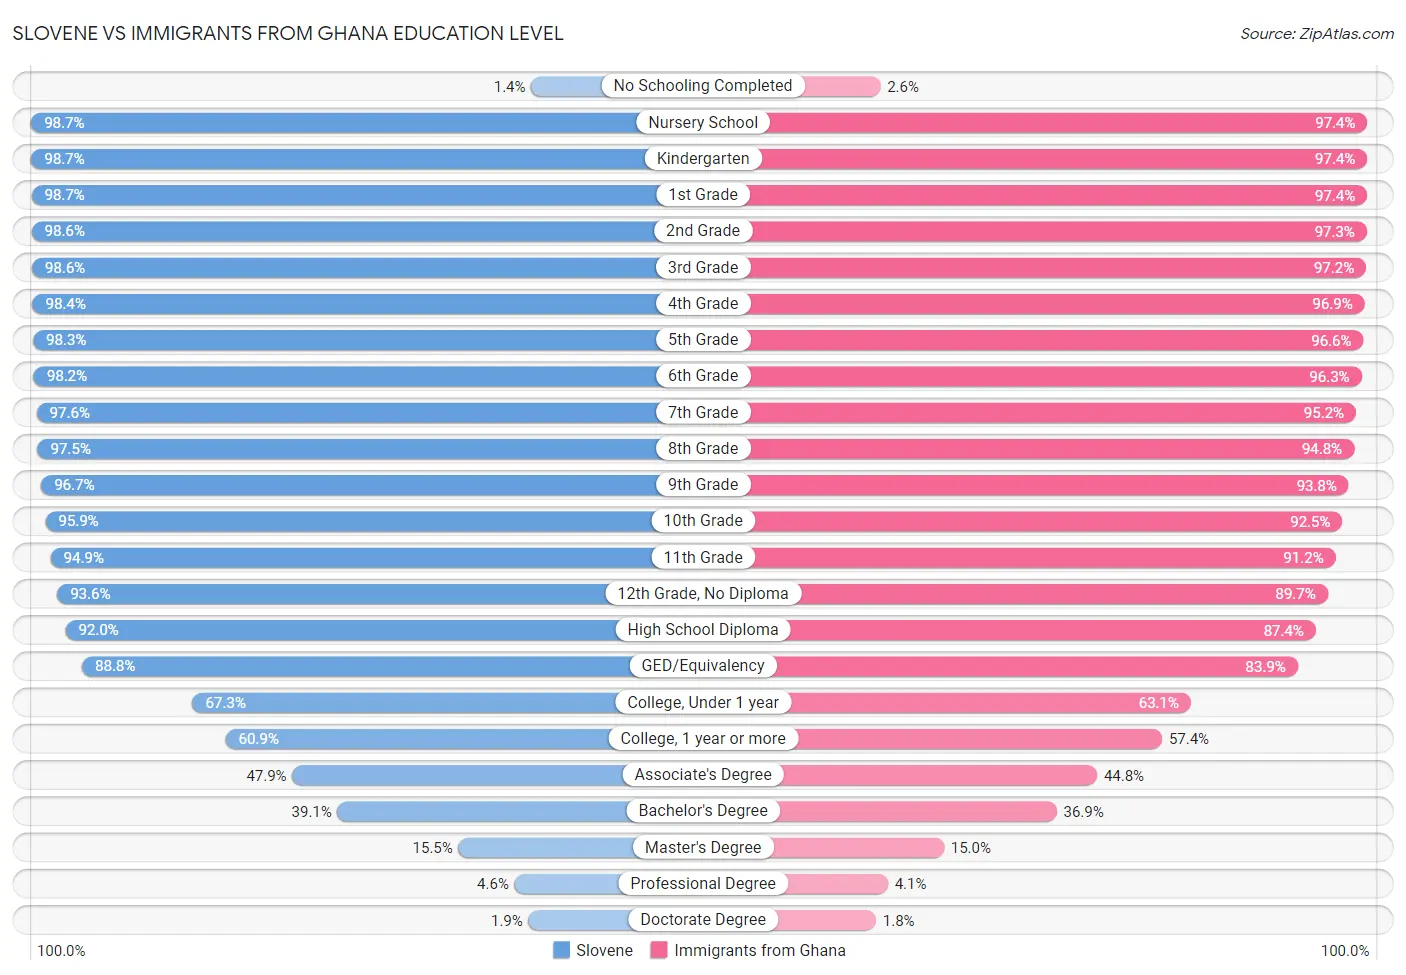 Slovene vs Immigrants from Ghana Education Level